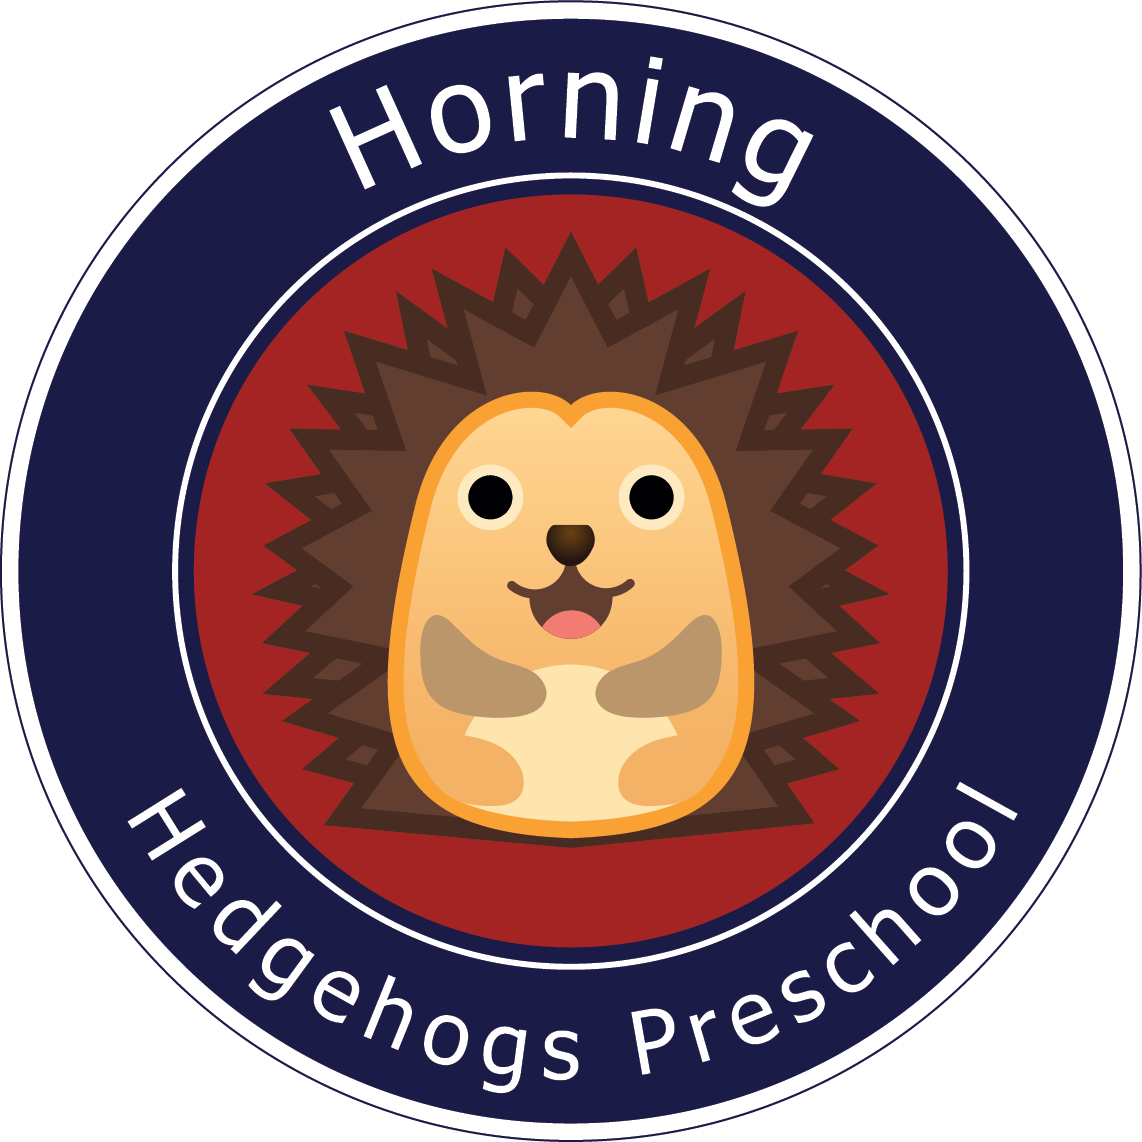 Horning Hedgehogs Forest Preschool